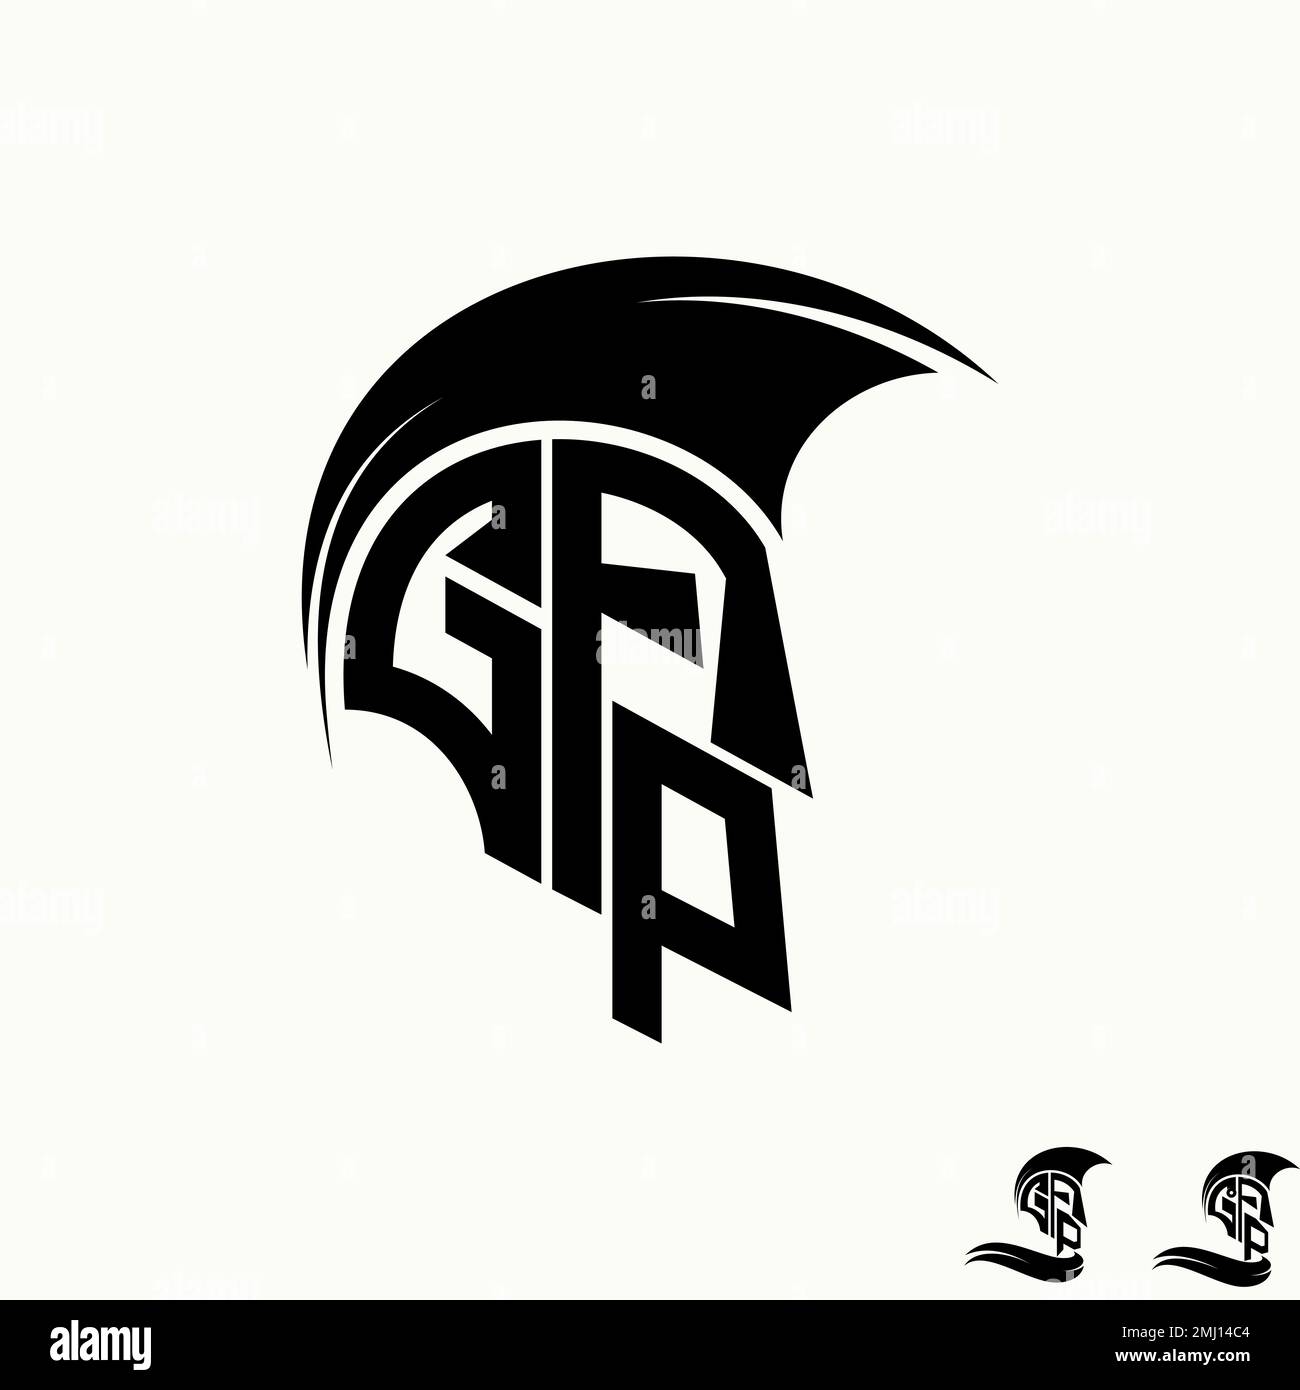 Simple et unique lettre ou mot GA ou GFA police comme trojan spartan casque graphique icône logo design abstrait concept vecteur sport armée initiale Illustration de Vecteur